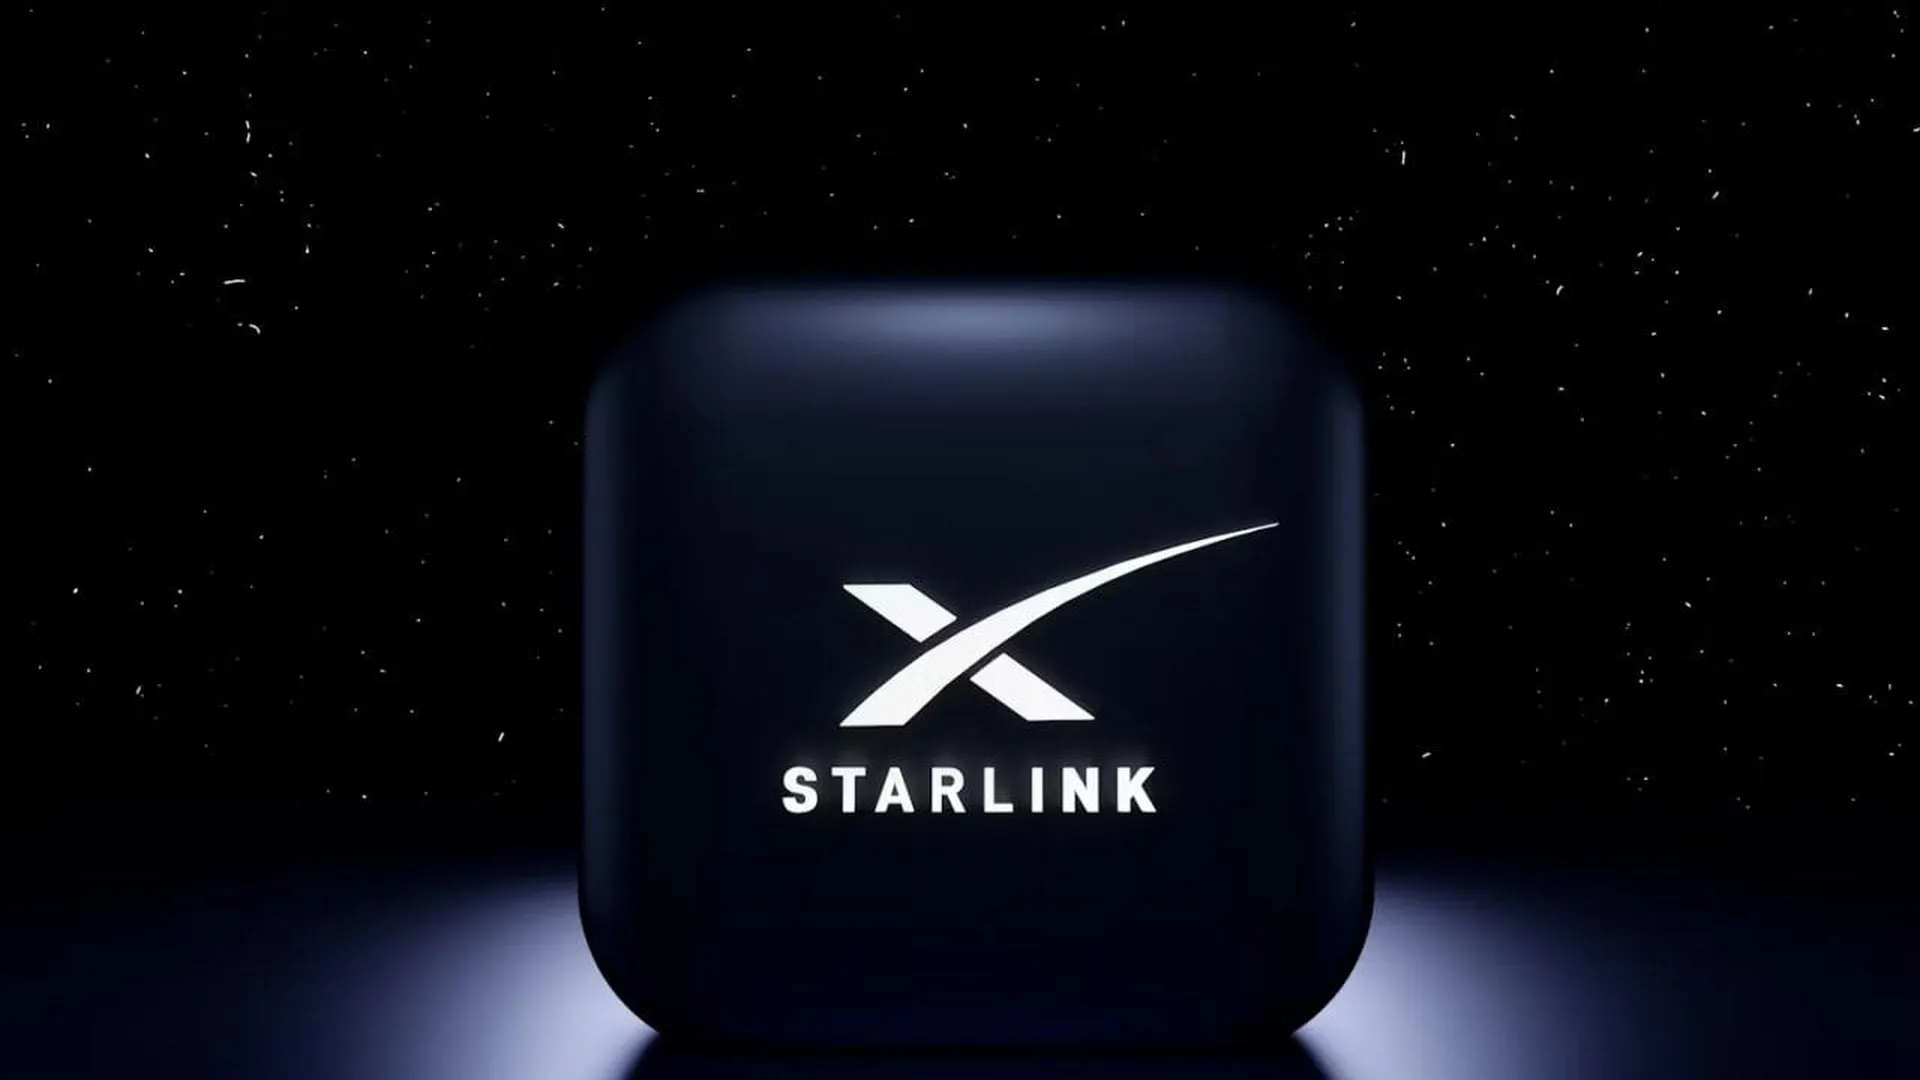 «Категорически неправда». Компания SpaceX не продавала терминалы Starlink России